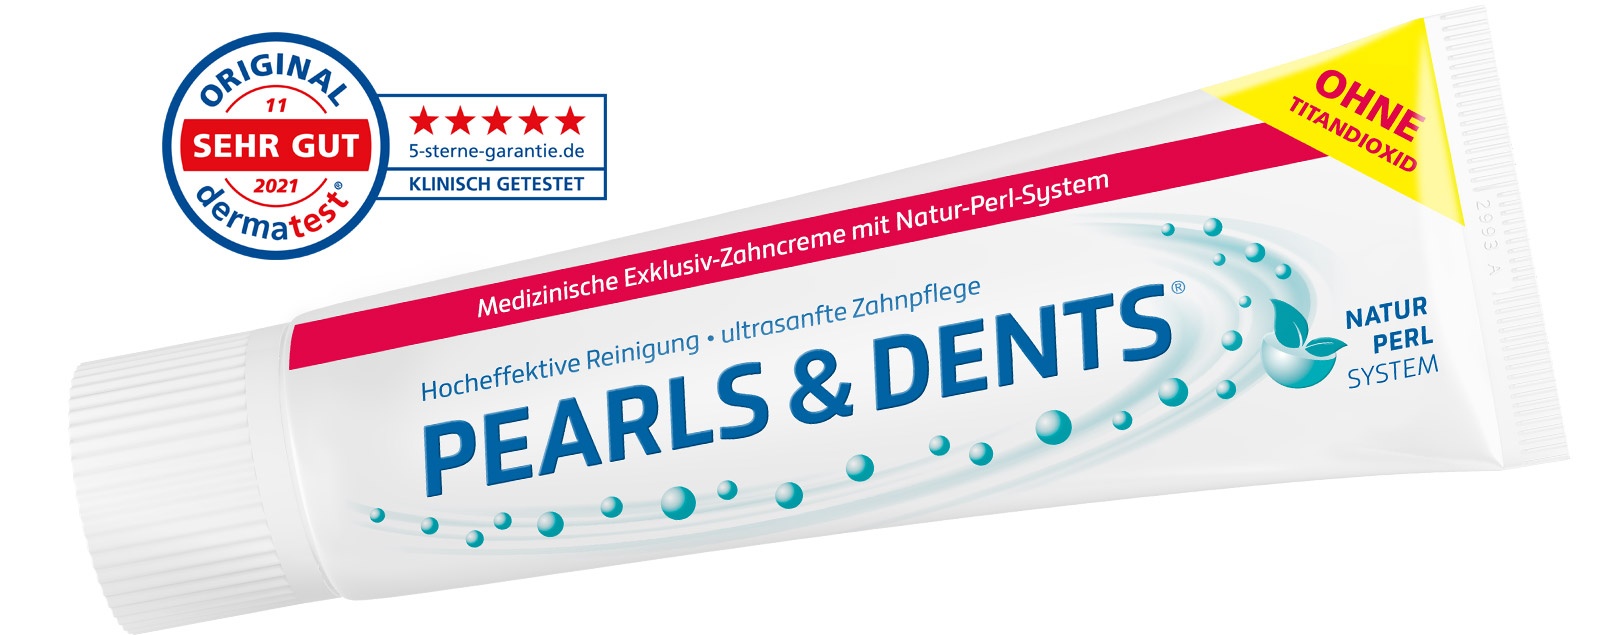 Pearls & Dents - Die neue Pearls & Dents